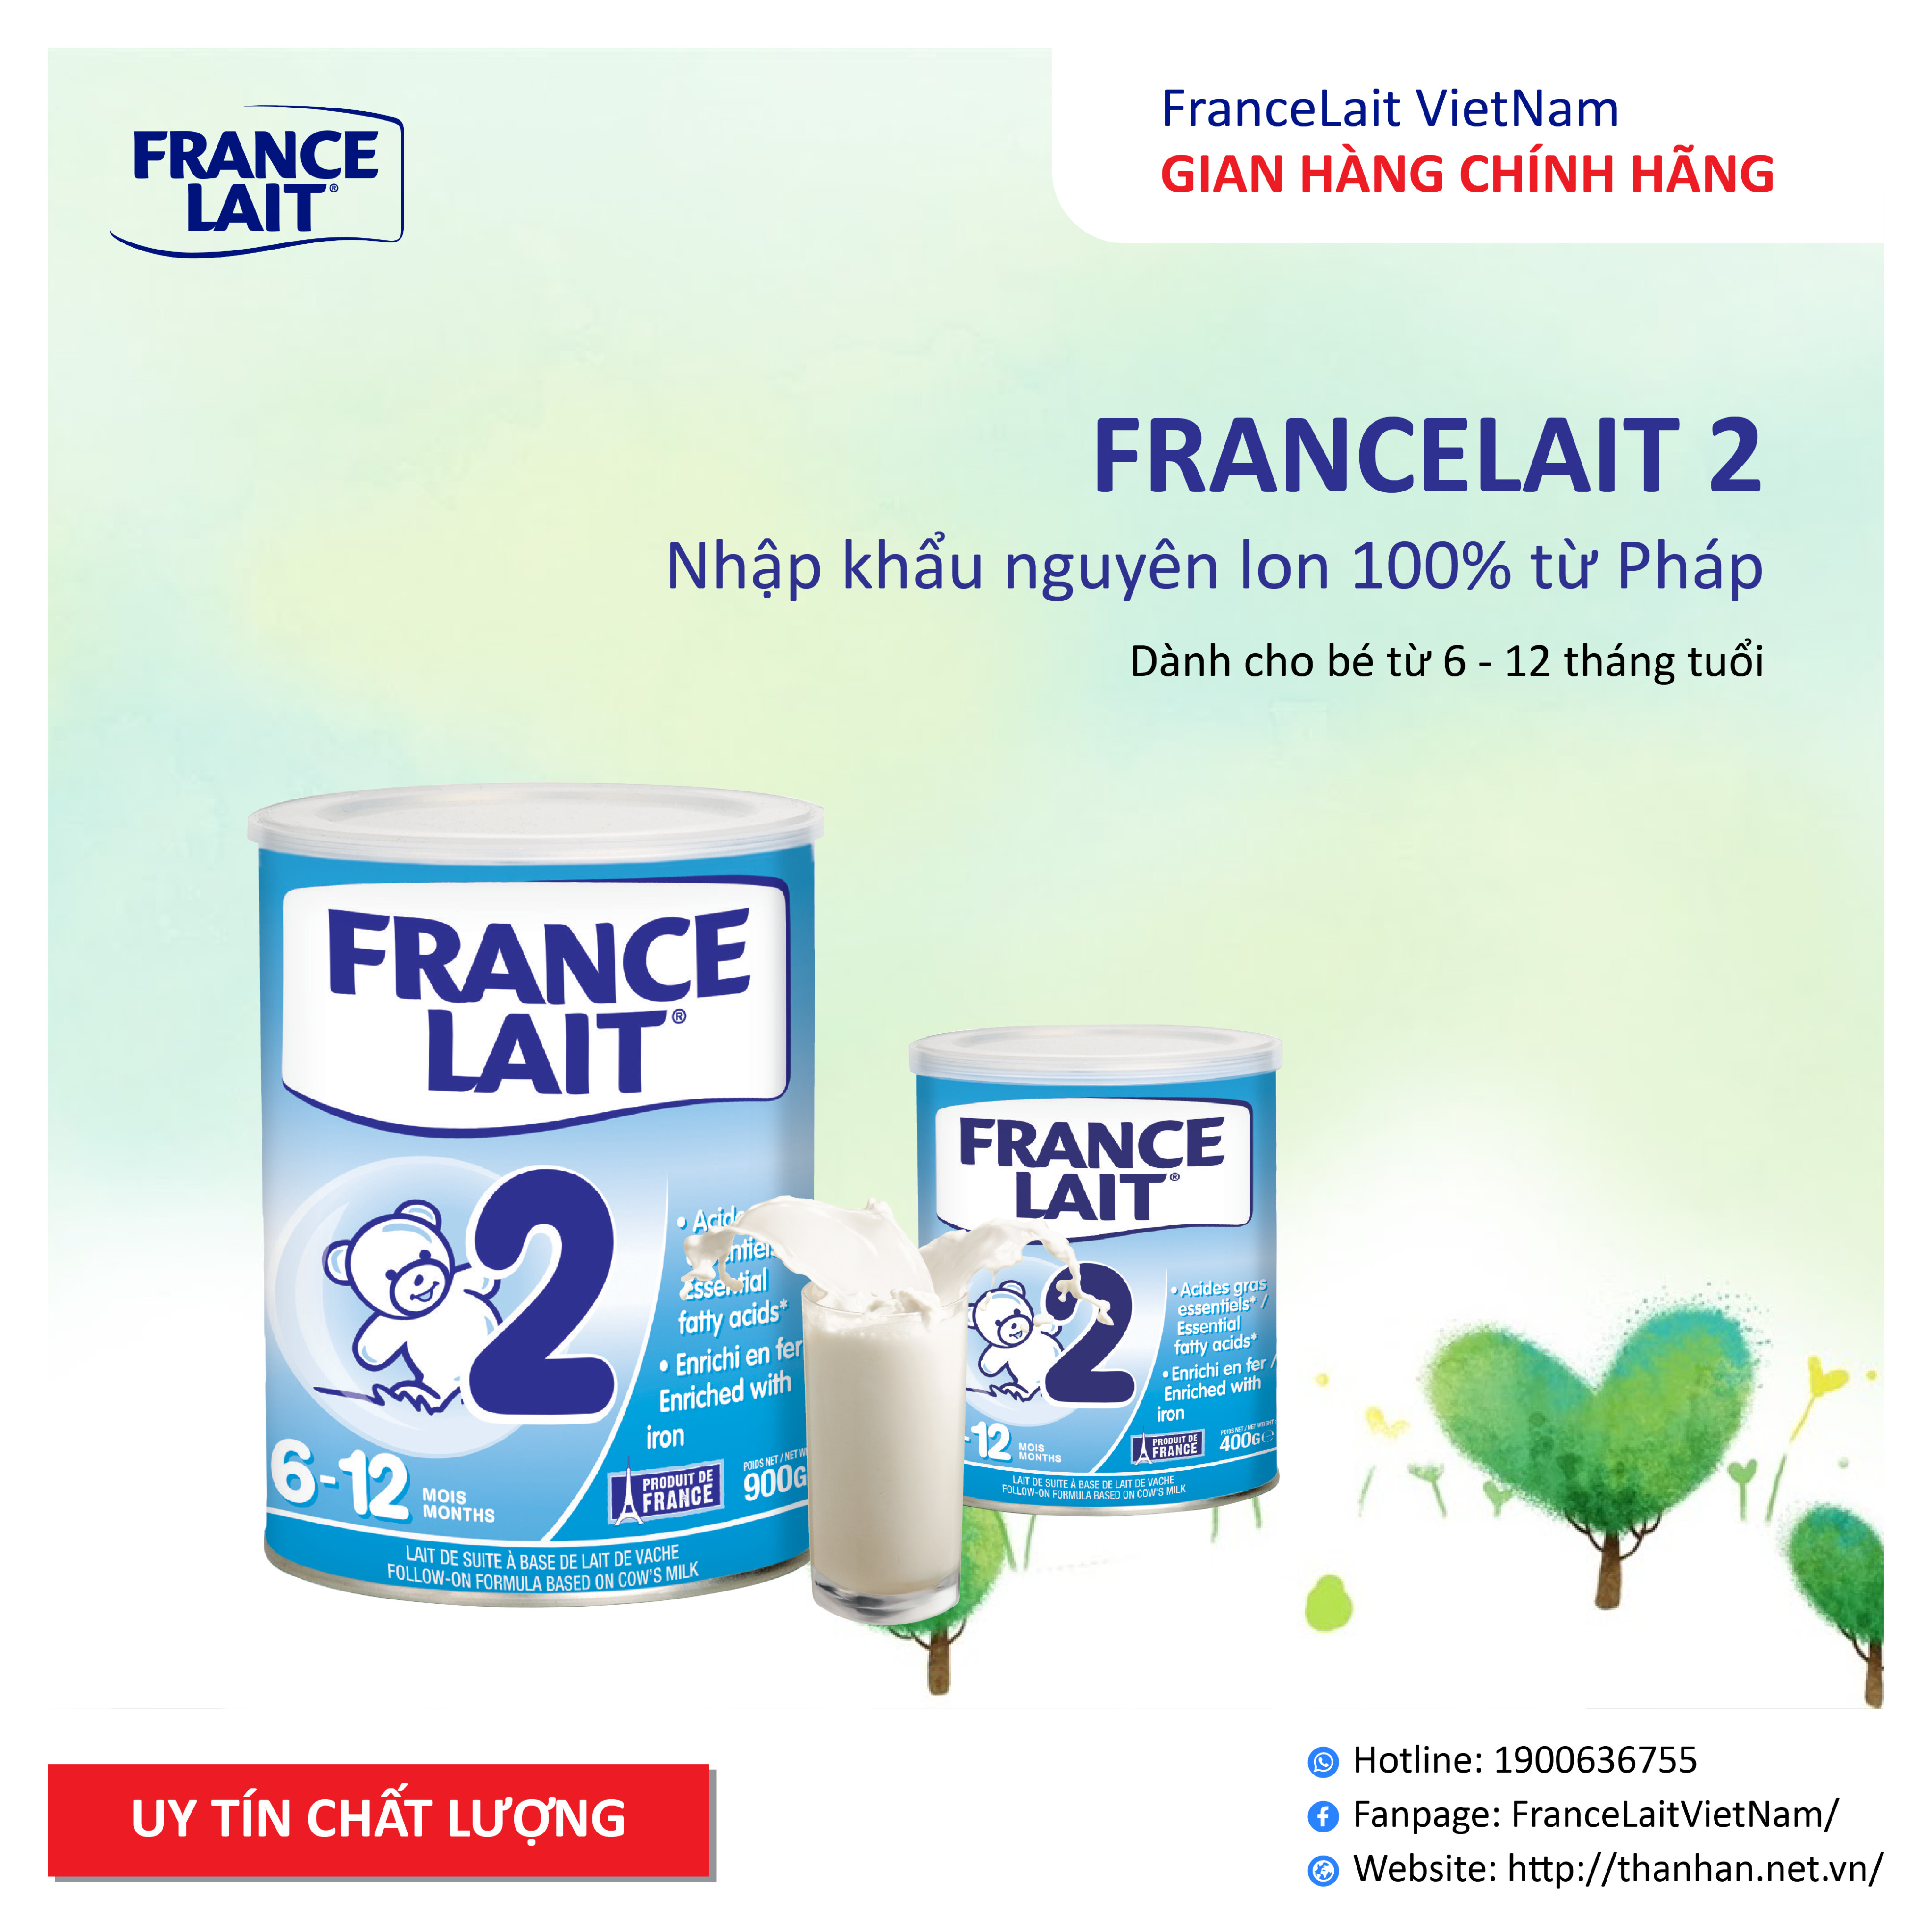 Sữa bột France Lait chính hãng nhập nguyên lon tại pháp số 2